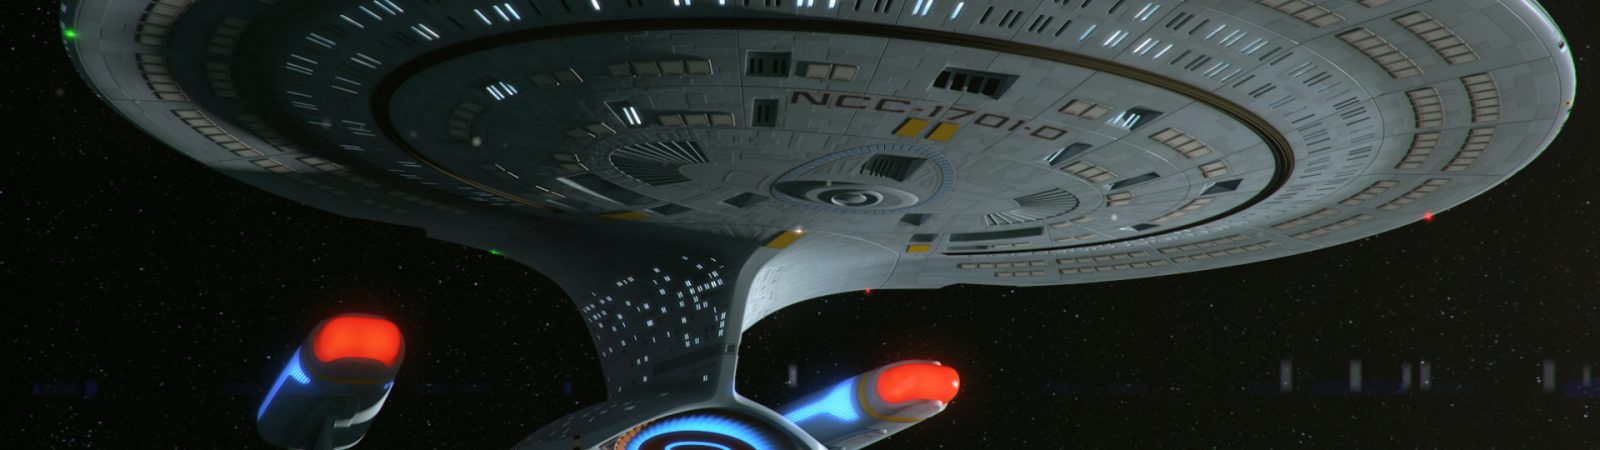 Enterprise-A update #10